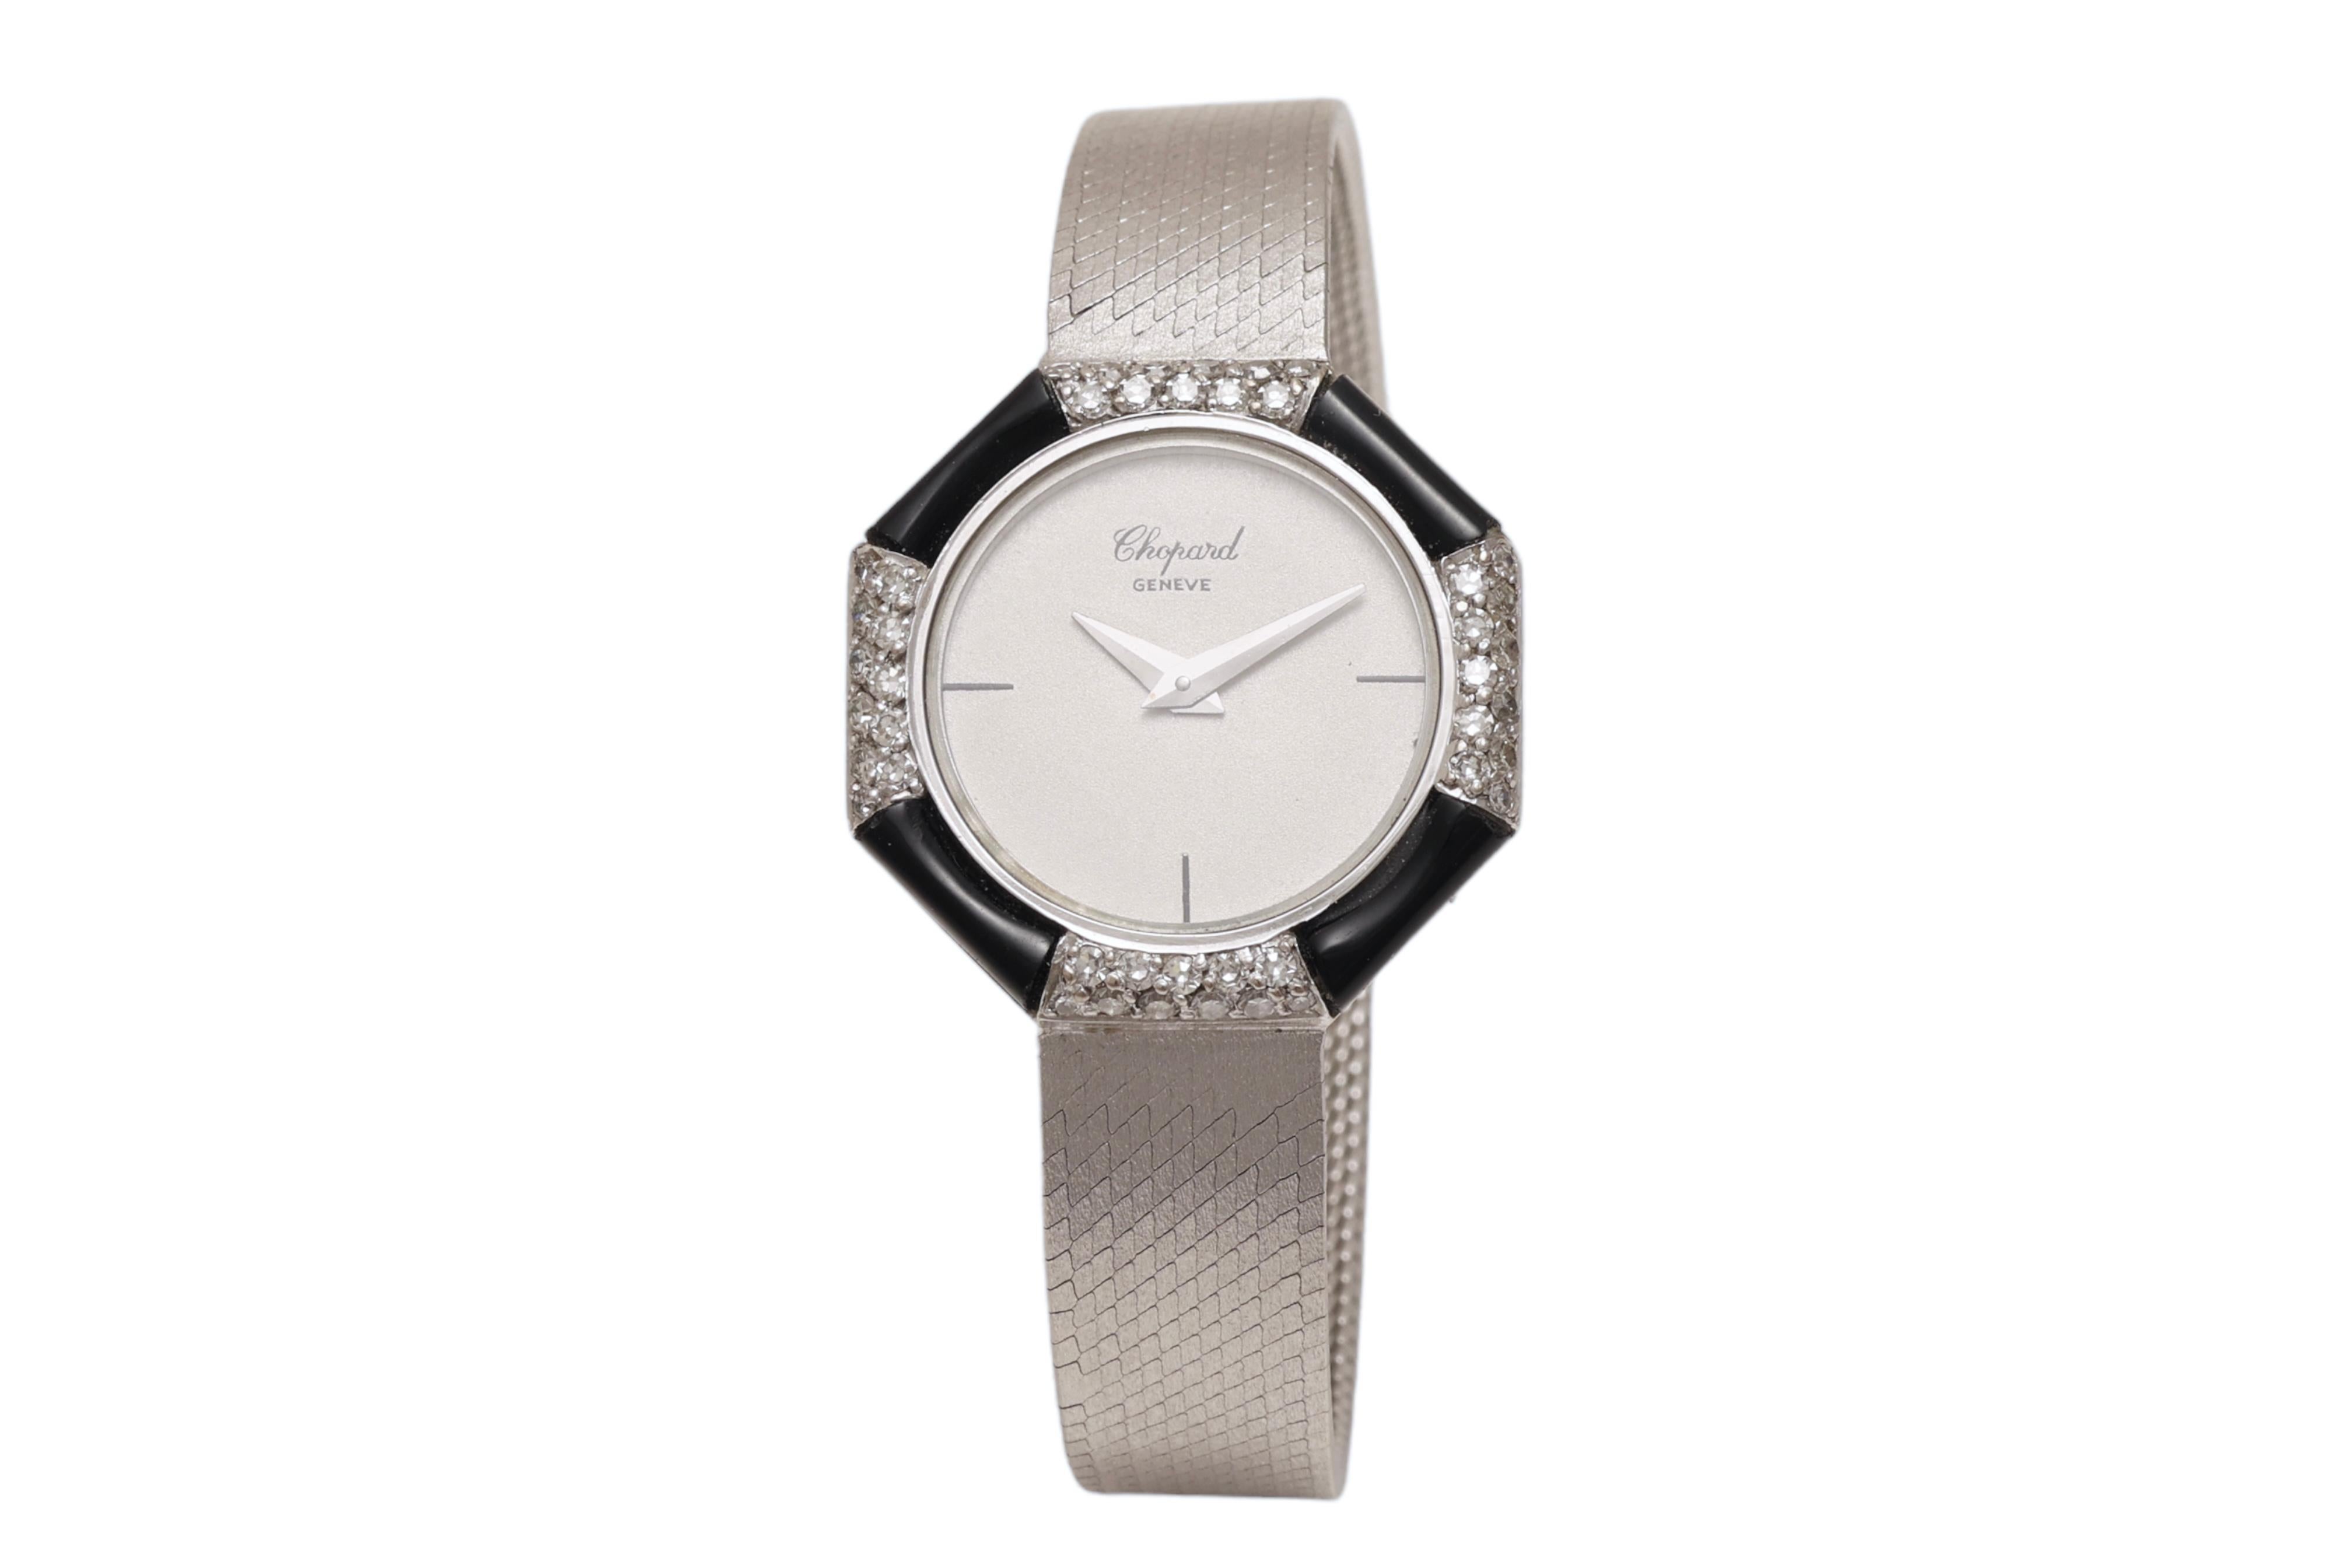 Artisan 18 Kt White Gold Chopard Onyx & Diamonds Lady Wrist Dress Watch For Sale